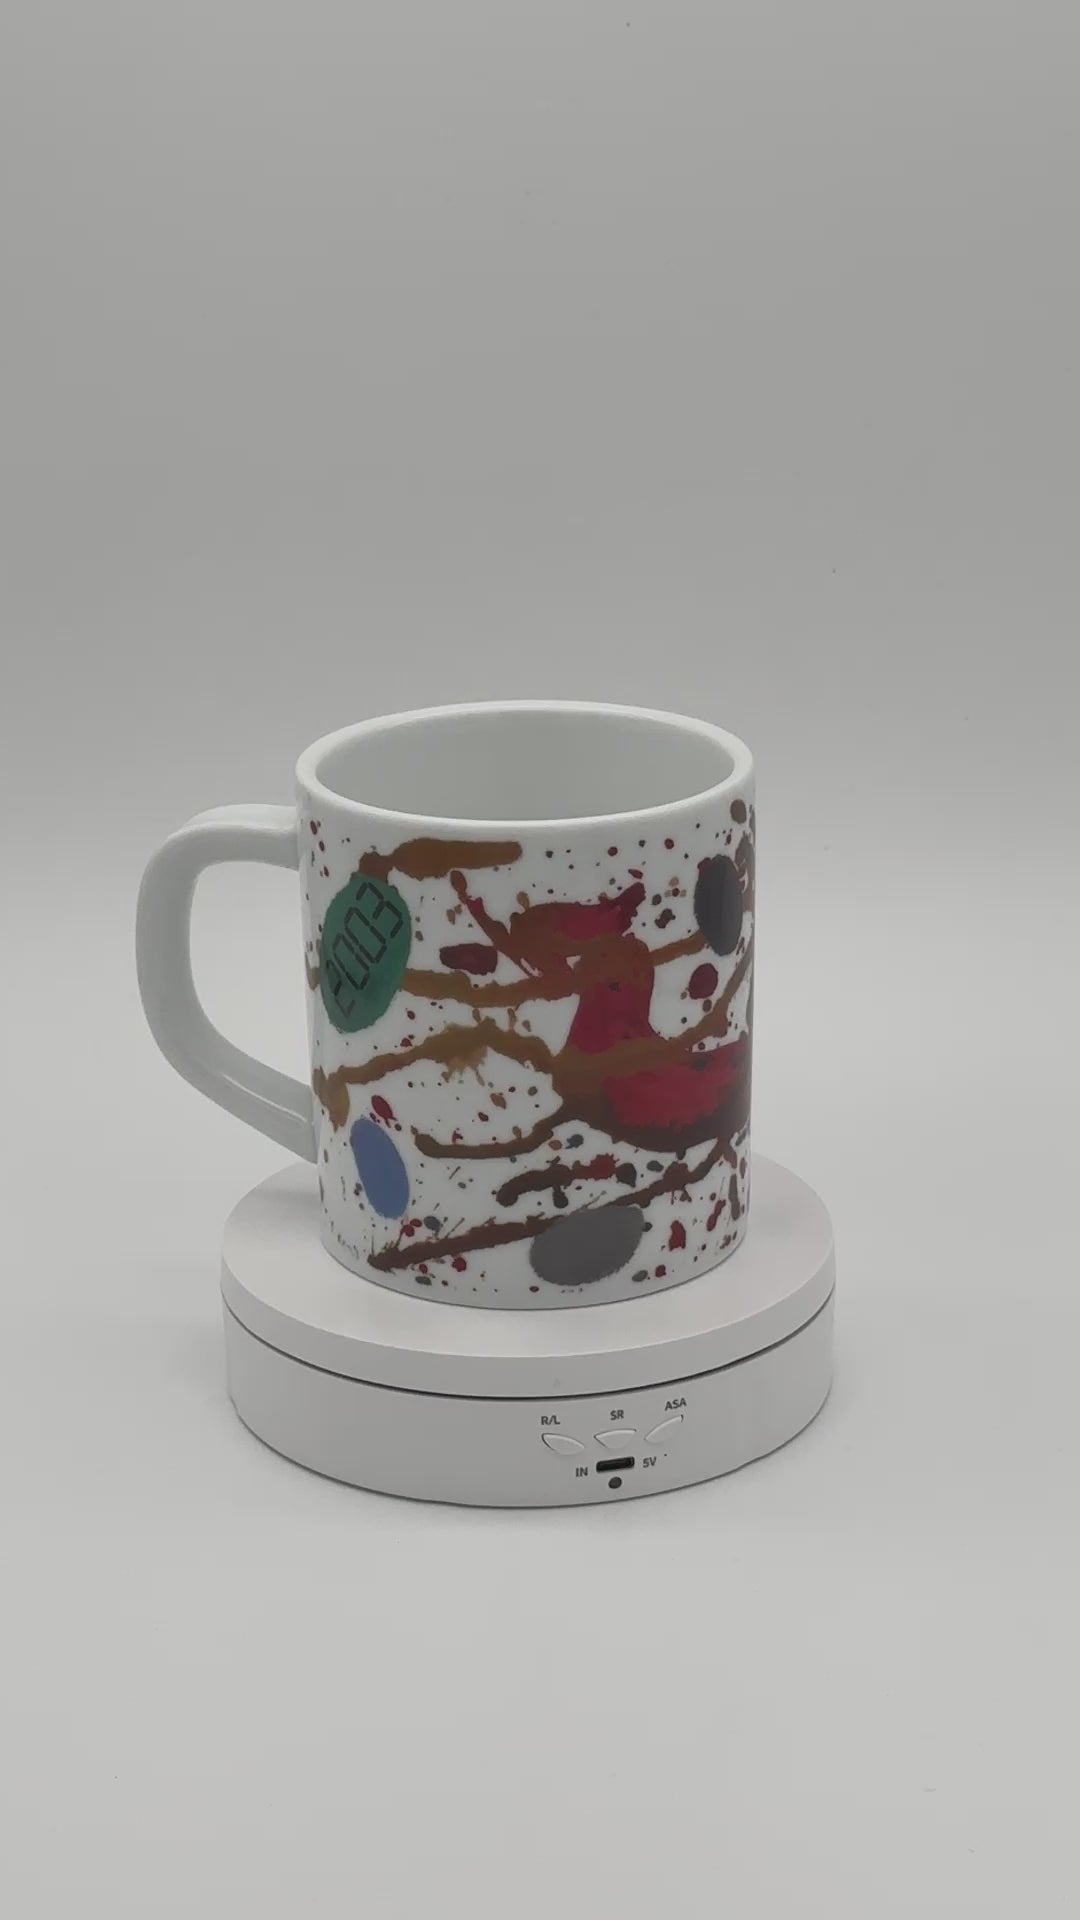 Royal Copenhagen - Annual mug - Year mug - 2003 - Doris bloom - Large - Art mug 